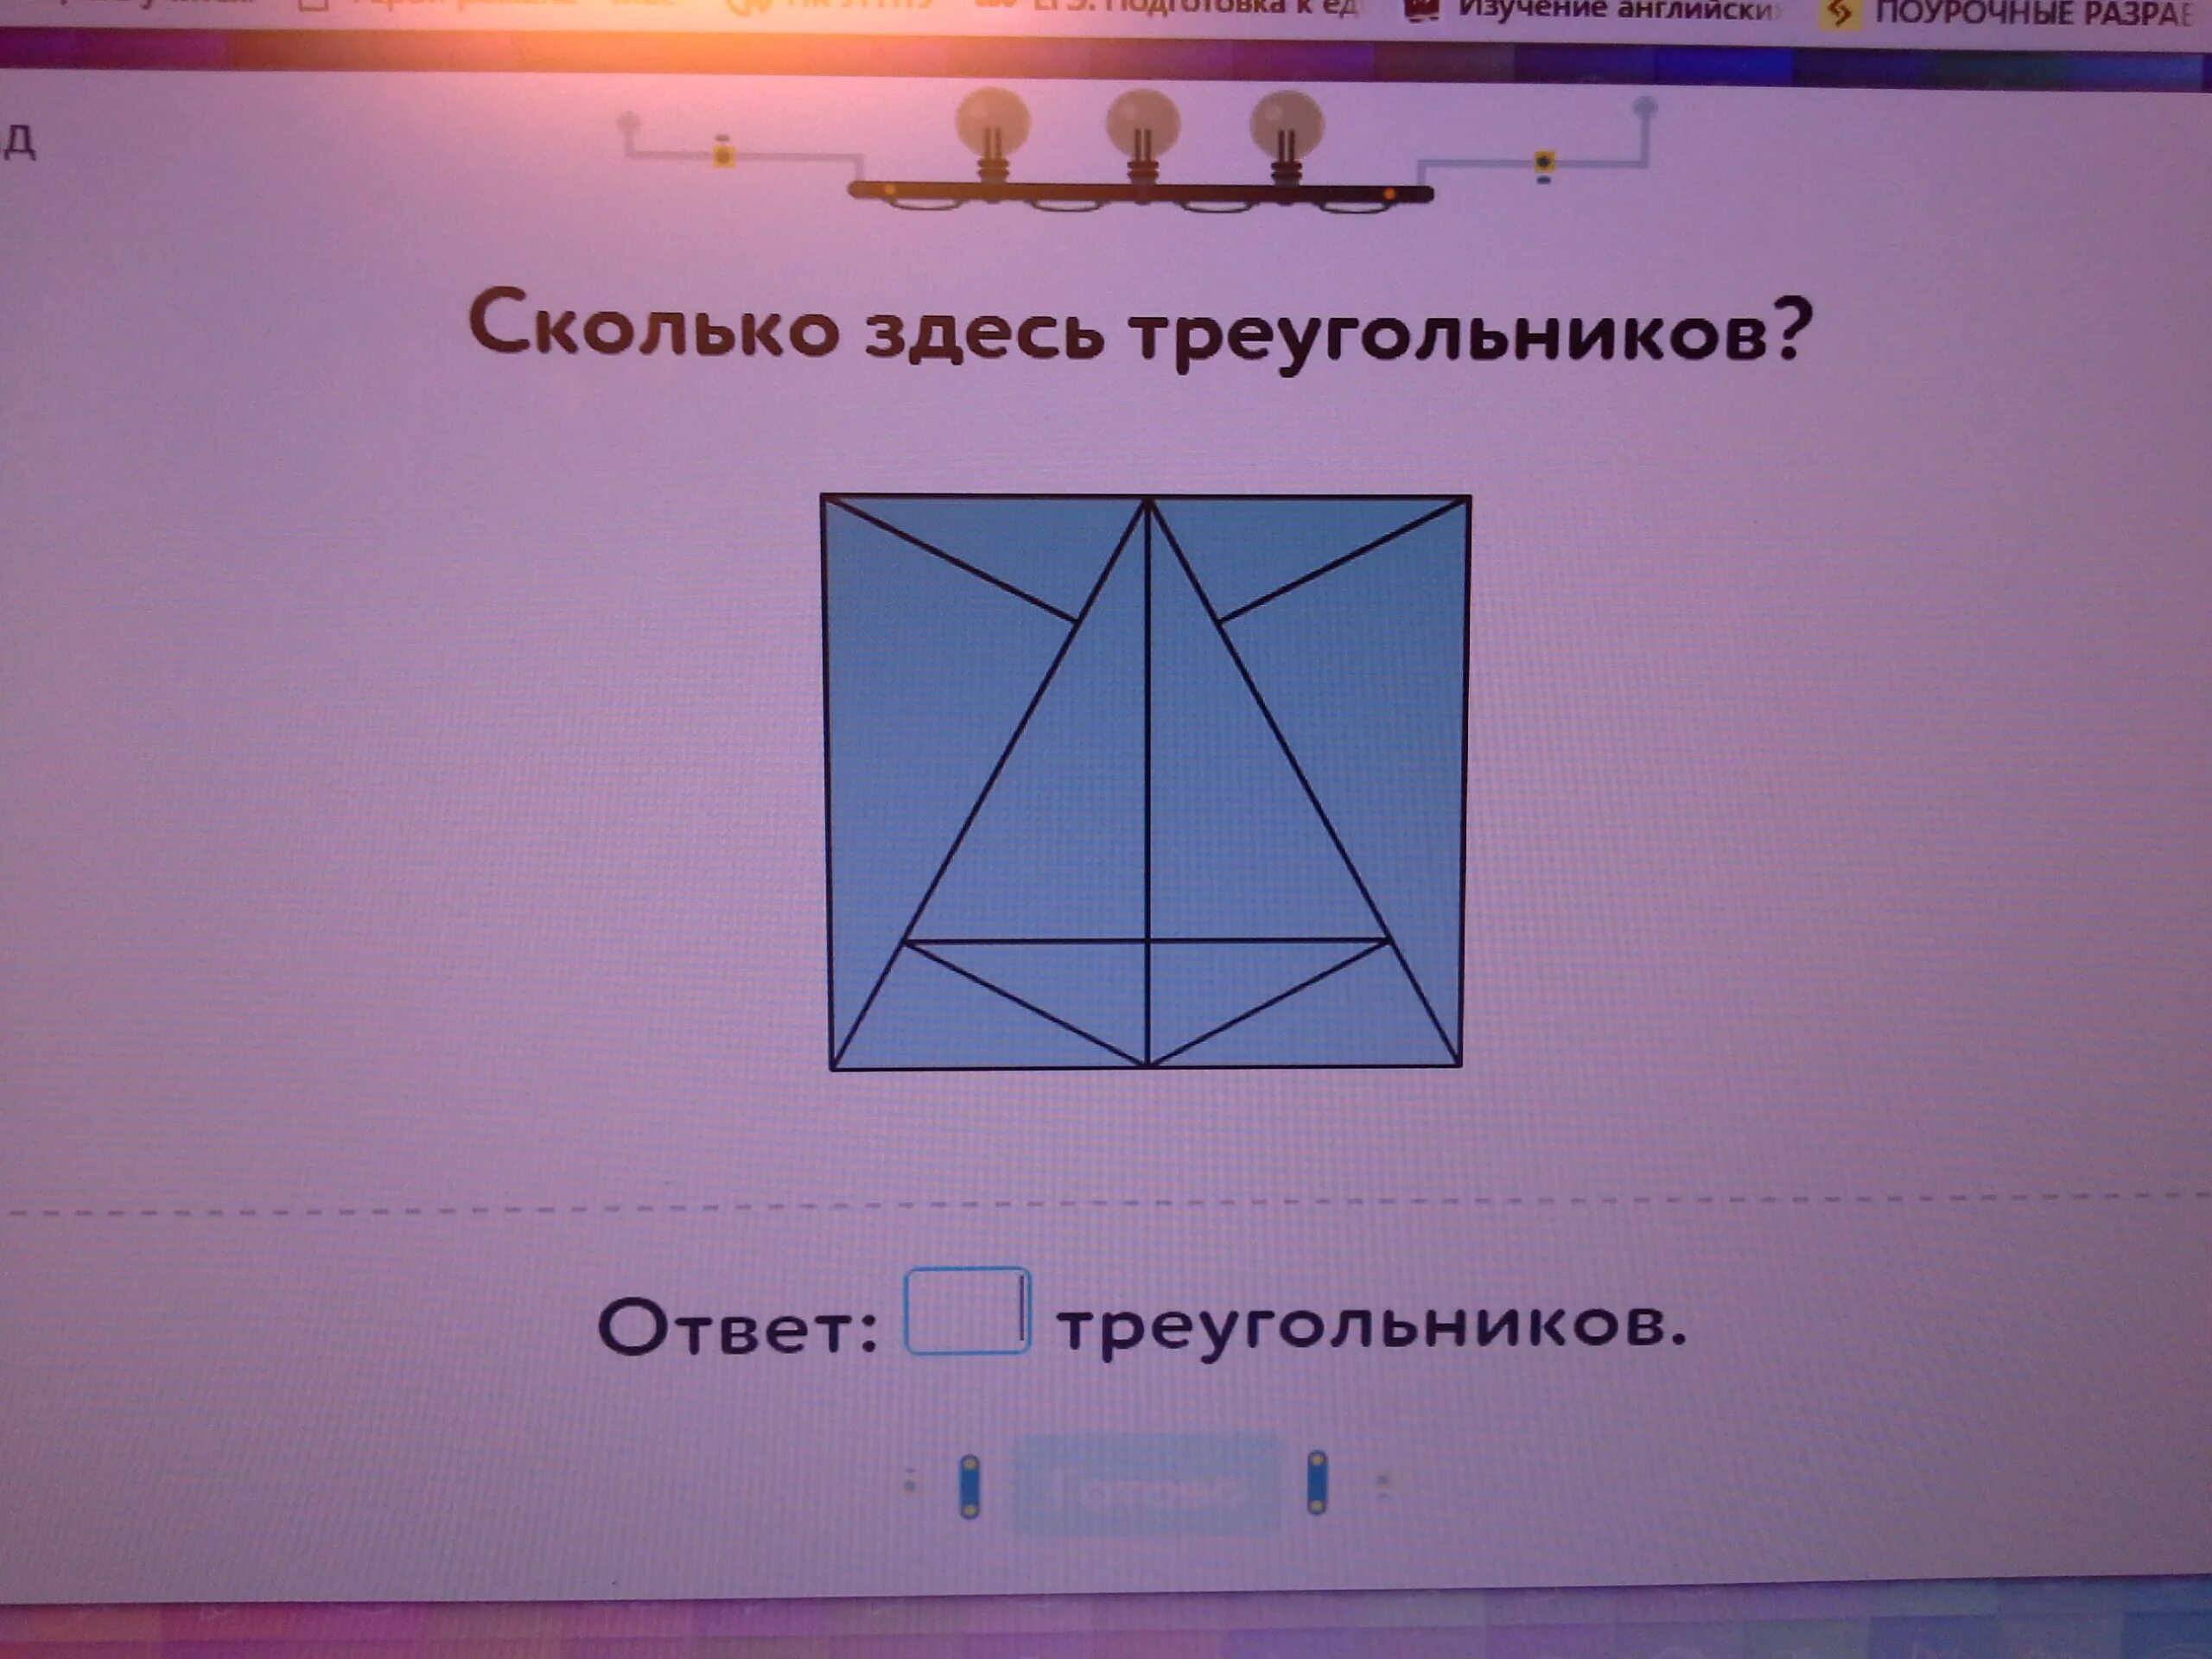 Сколькотздесь треугольников. Сколько здесь треугольников. Сколько сдель треугольников. Олько сдесь треугольников.